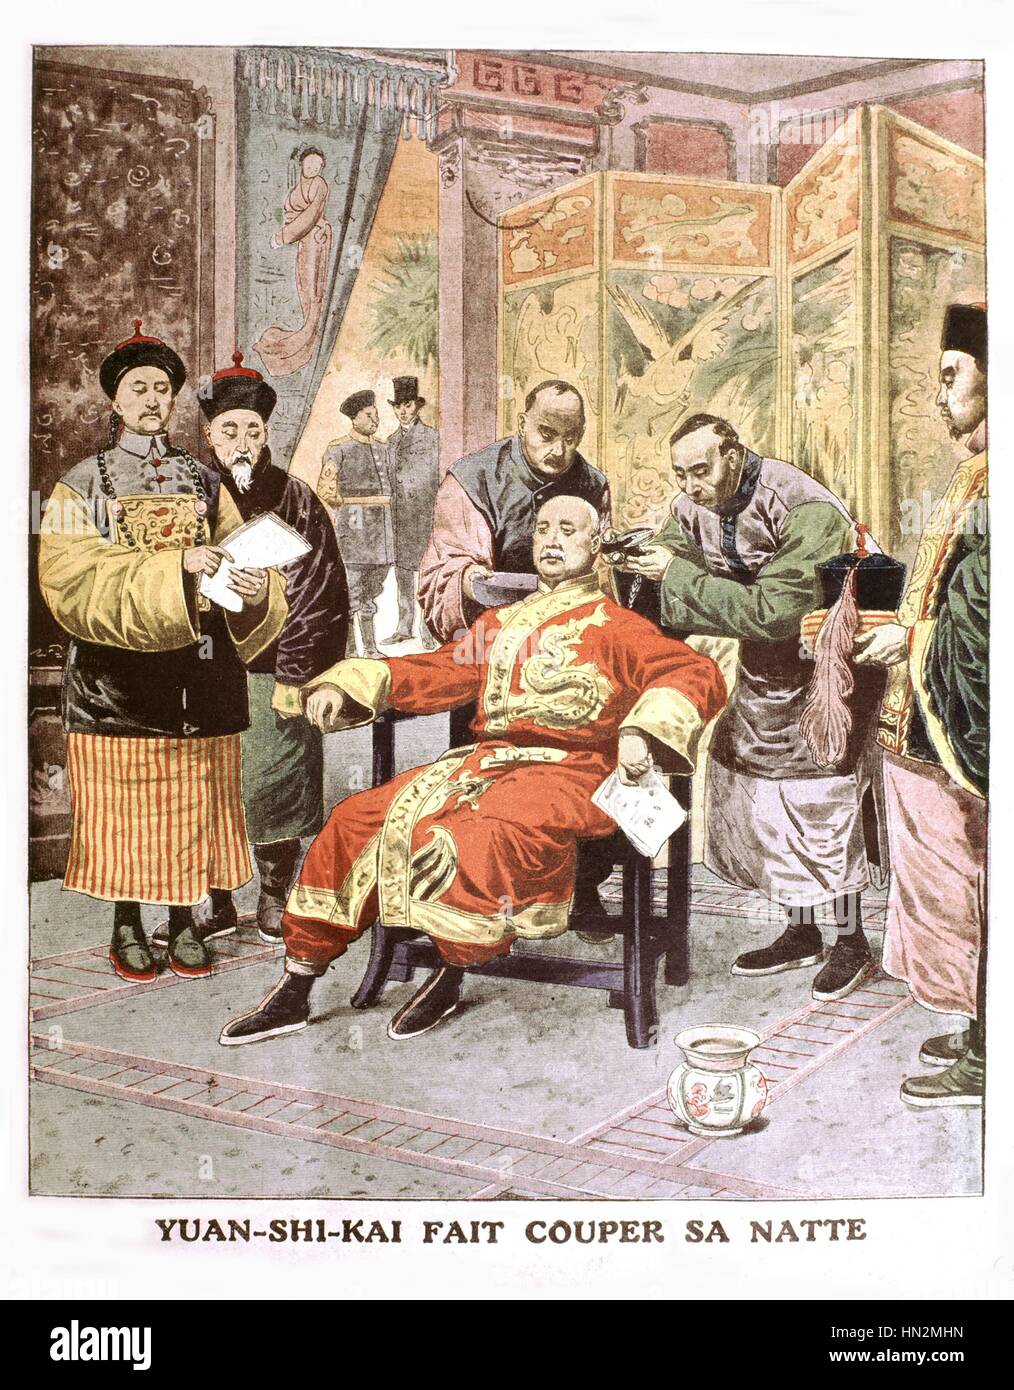 La révolution chinoise Yuan Shikai : avoir sa coupe de cheveux. Publié dans "Le Petit Journal" le 3 mars, 1912 Chine Banque D'Images